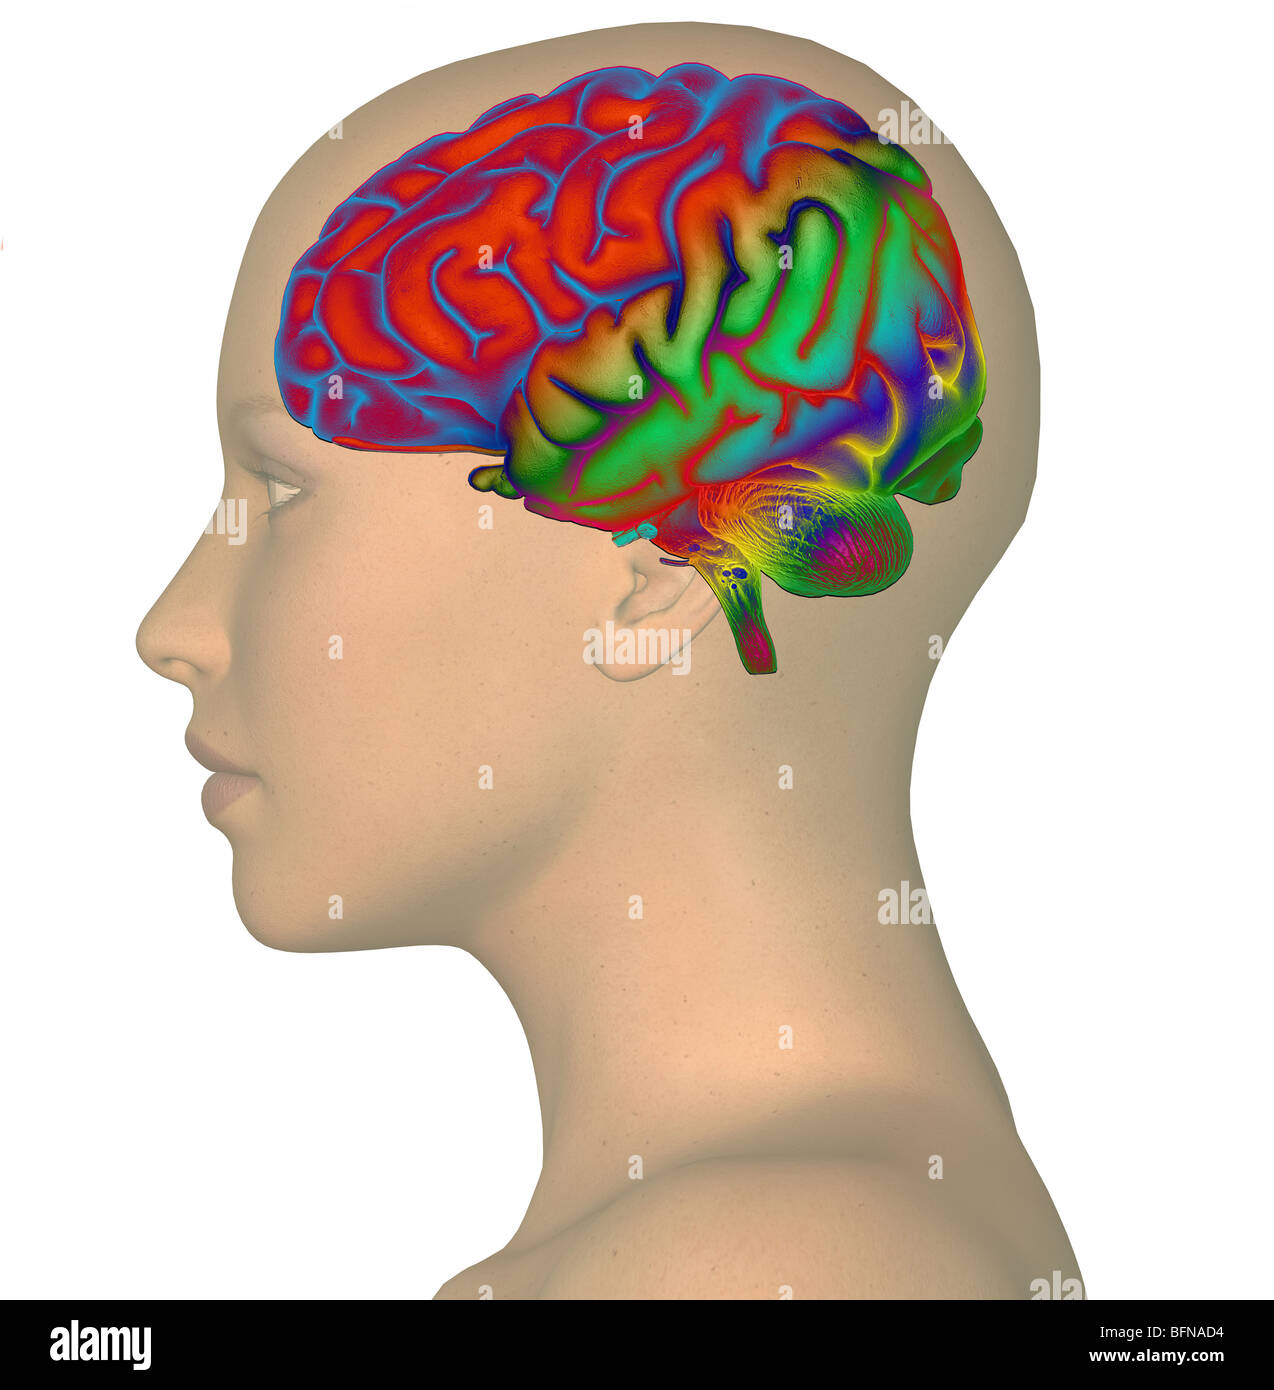 Ilustración de una mujer de la cabeza y el cerebro que ilustra el concepto de pensamiento Foto de stock